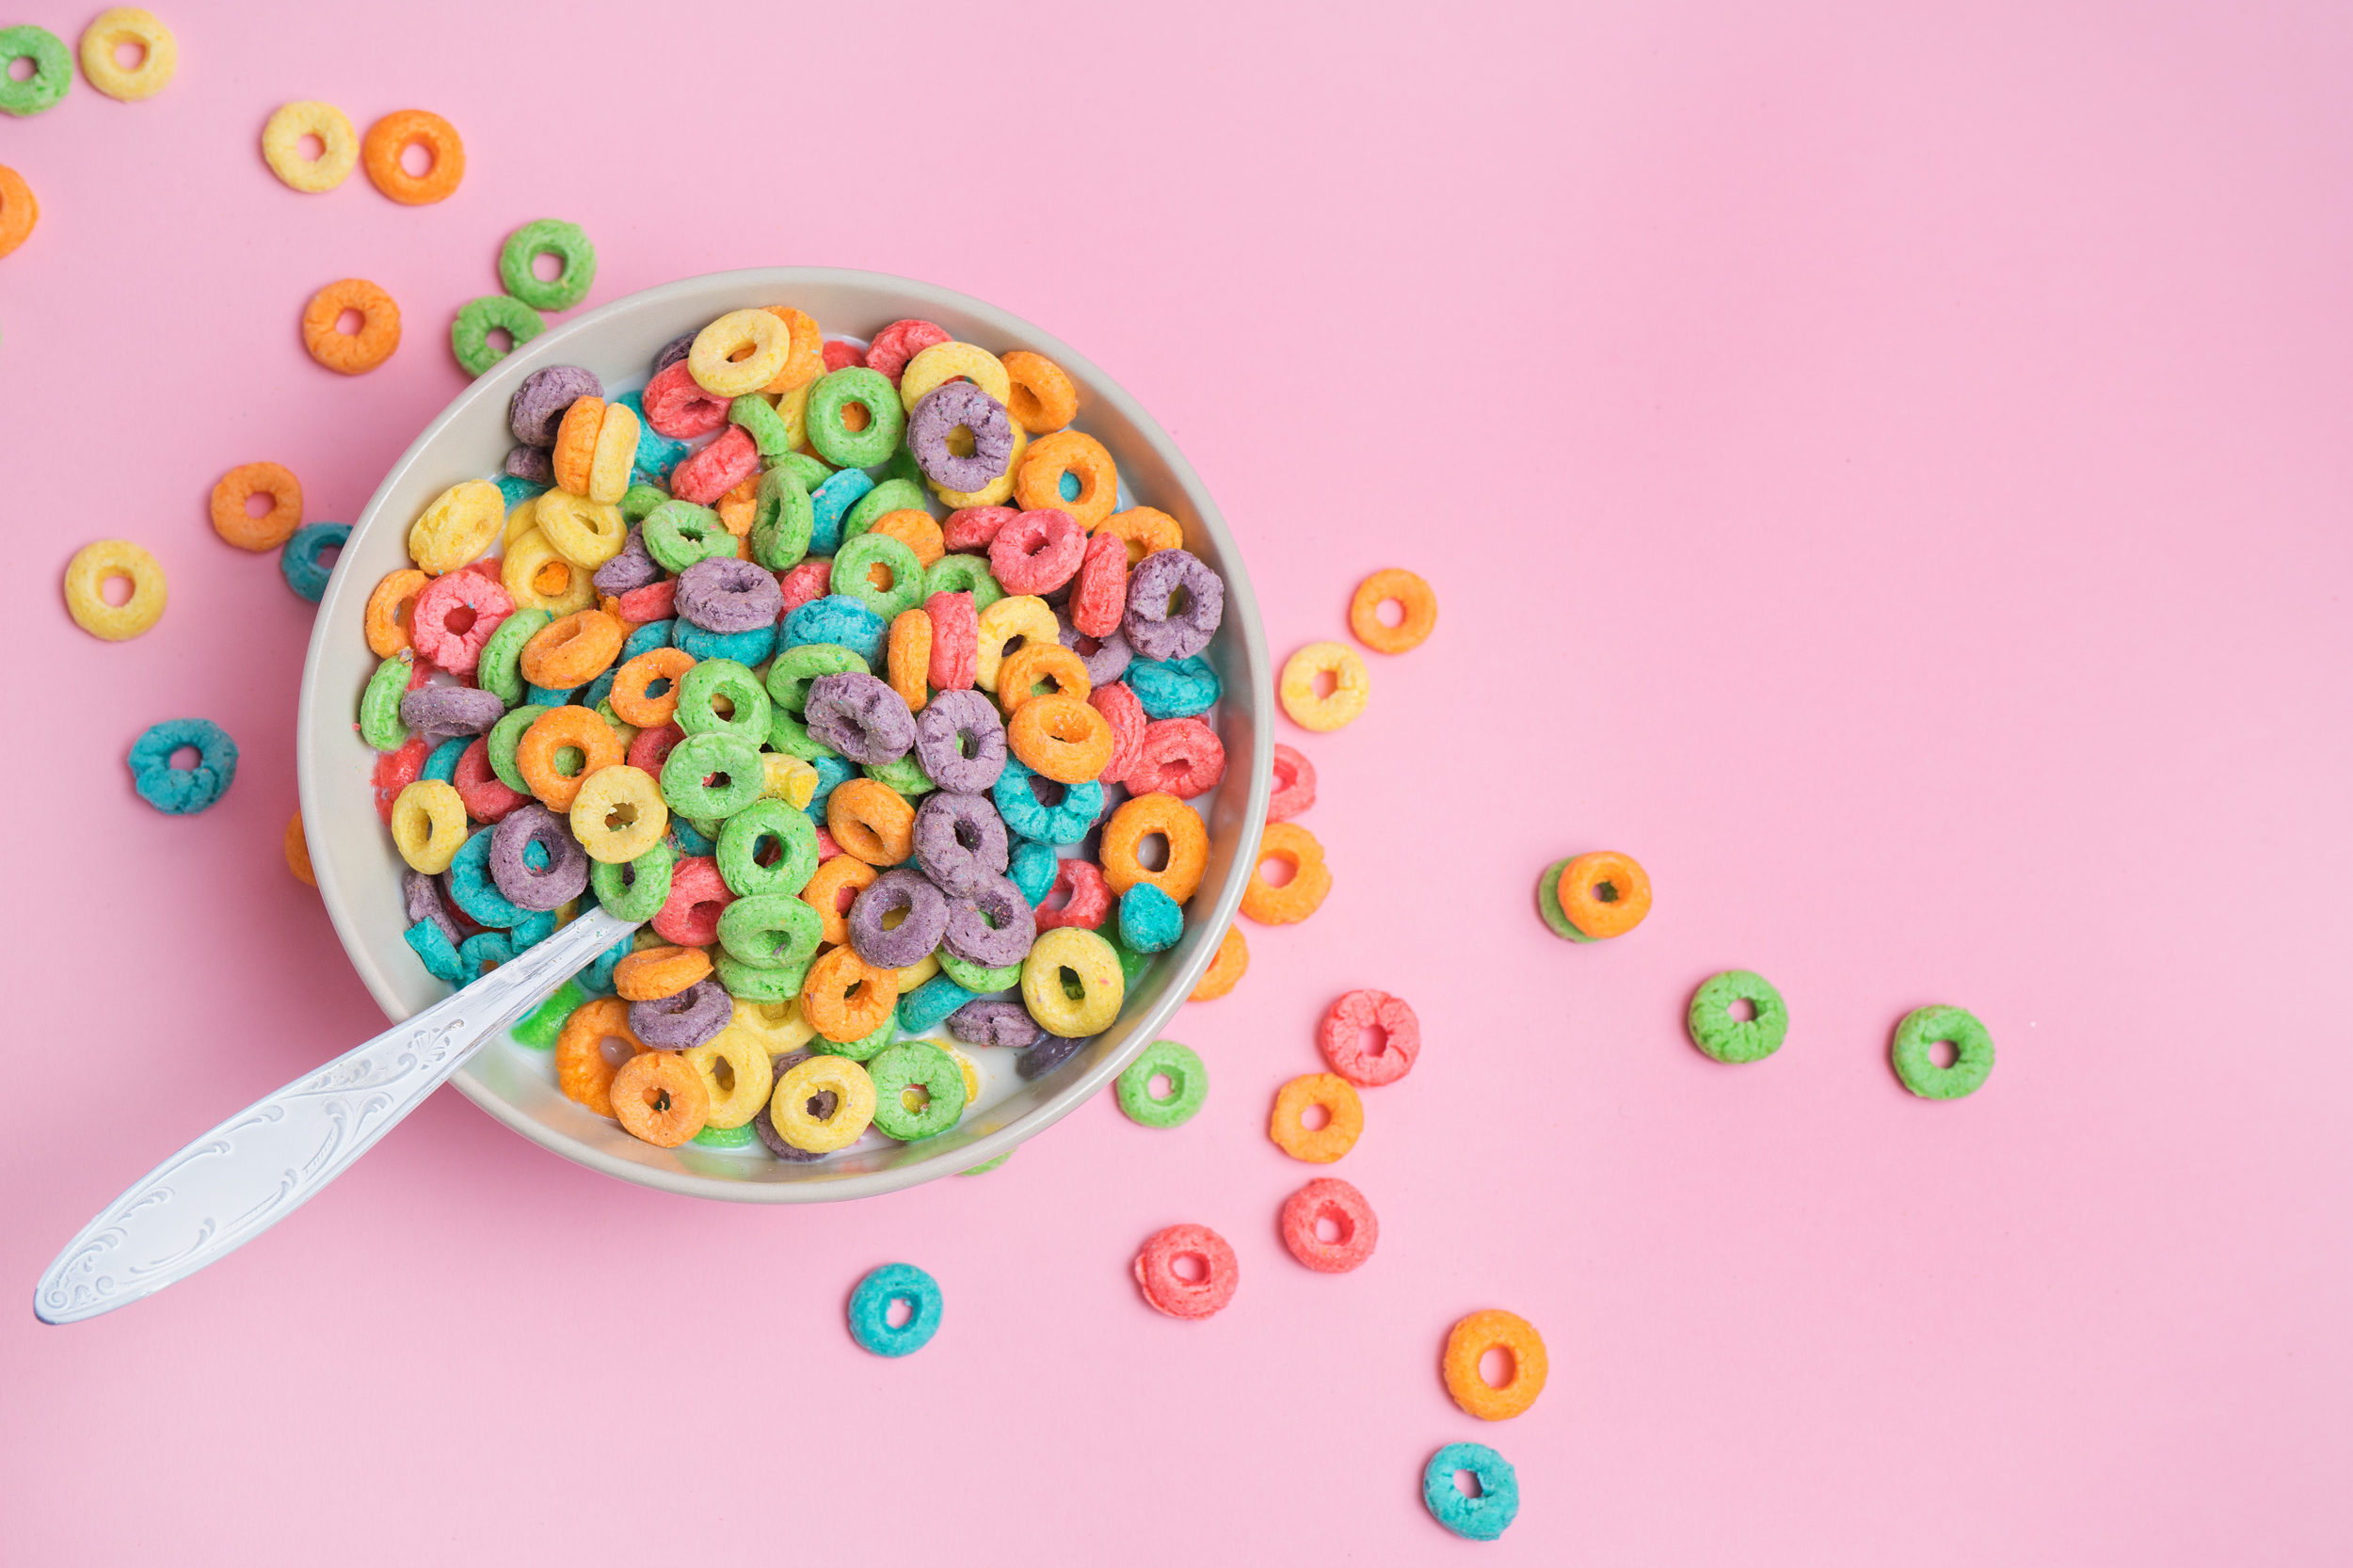 Cereali da colazione colorati in una tazza con cucchiaio, appoggiata su una superficie rosa